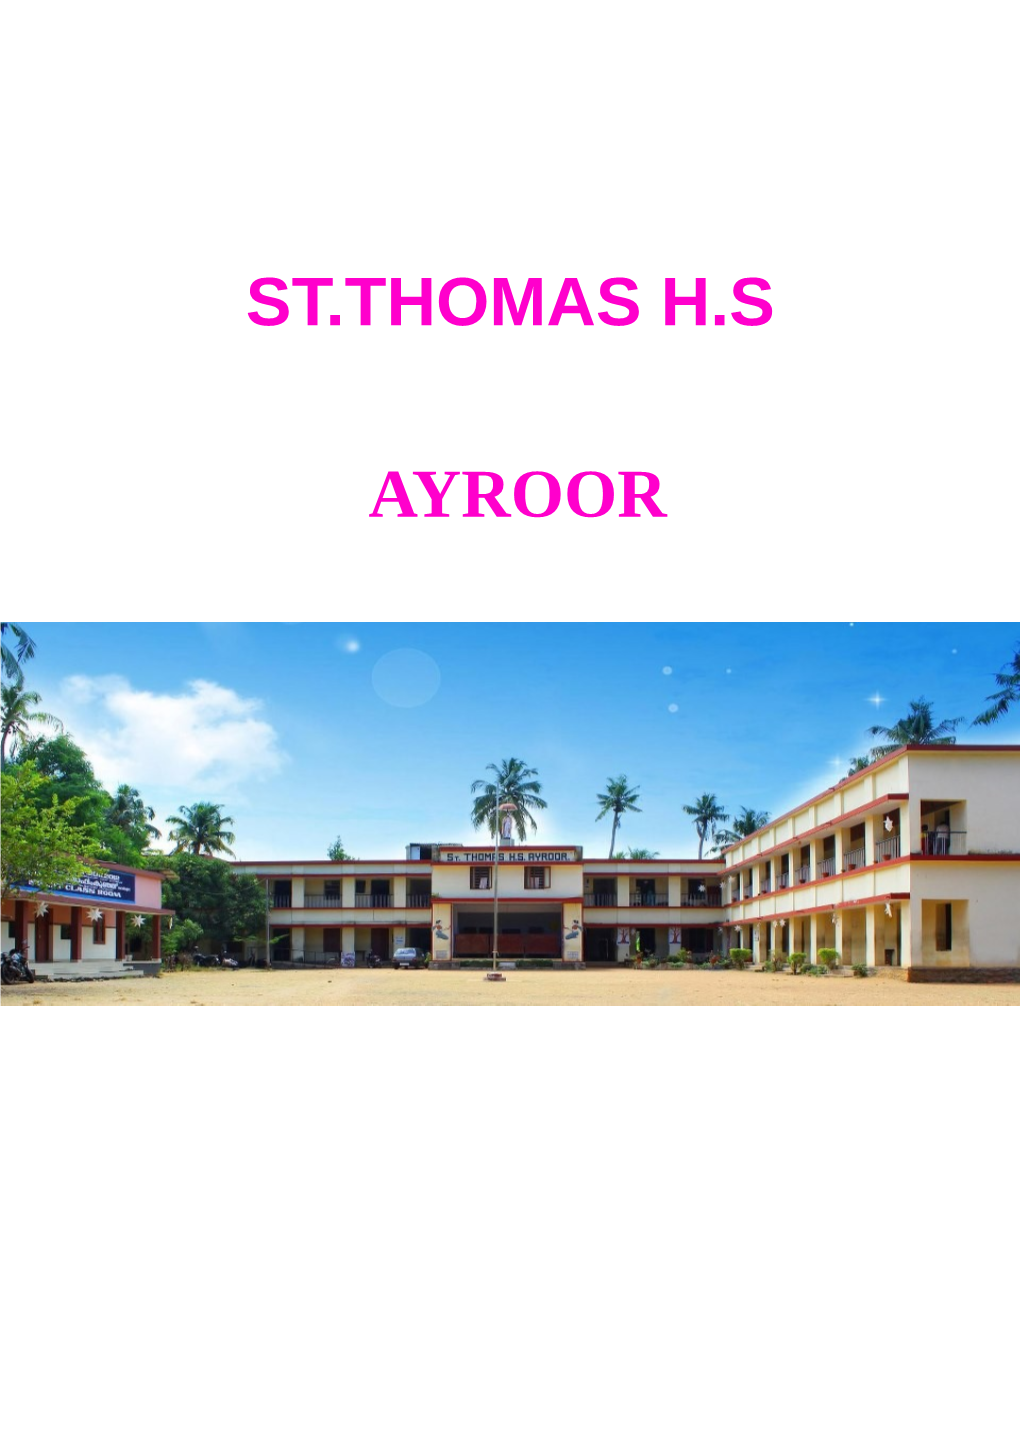 St.Thomas H.S Ayroor